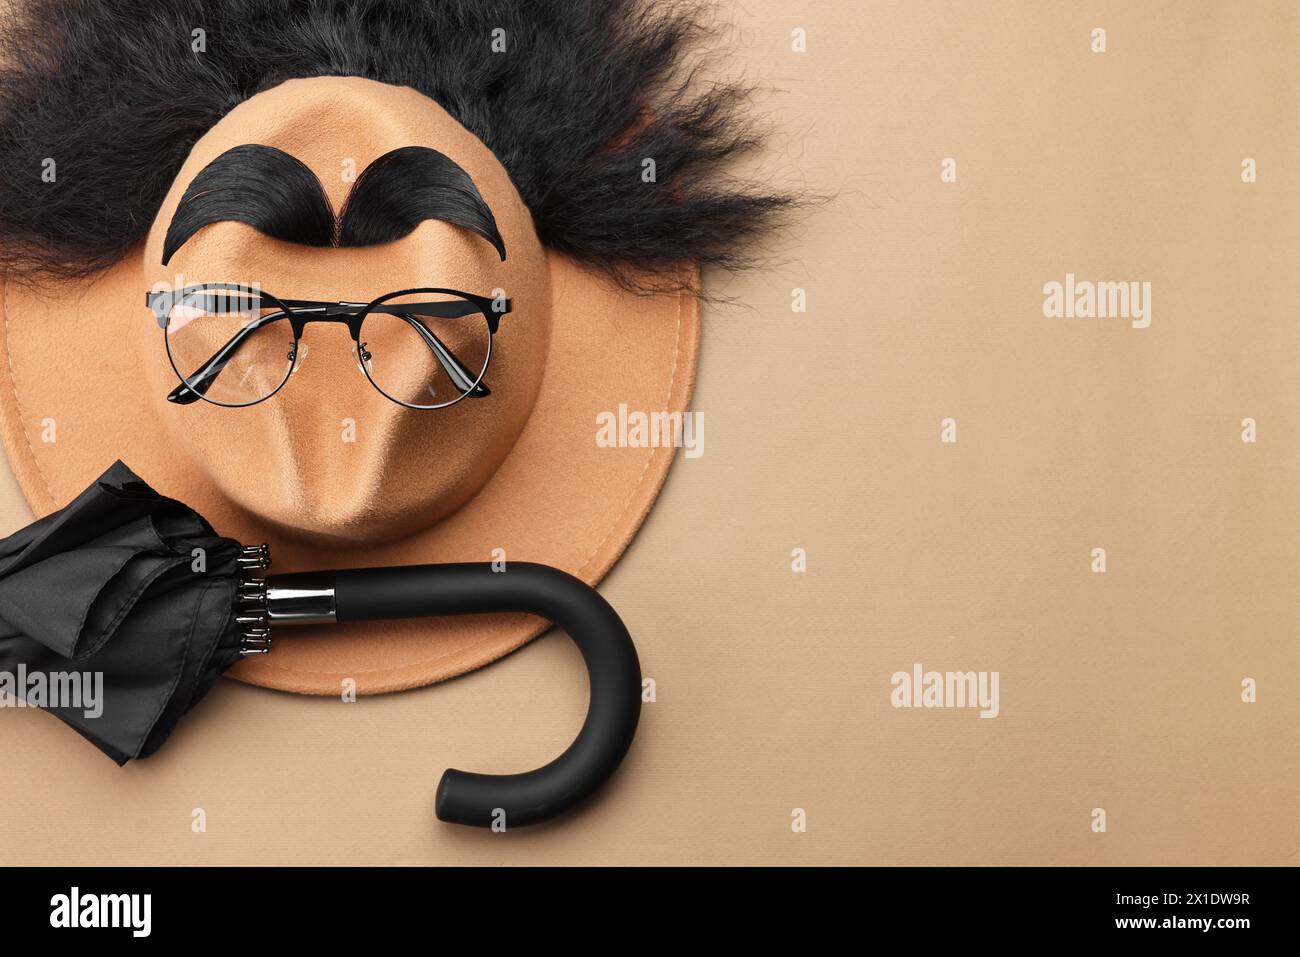 Männergesicht aus Kunsthaar, Augenbrauen, Brille und Hut auf beigefarbenem Hintergrund, Draufsicht. Leerzeichen für Text Stockfoto